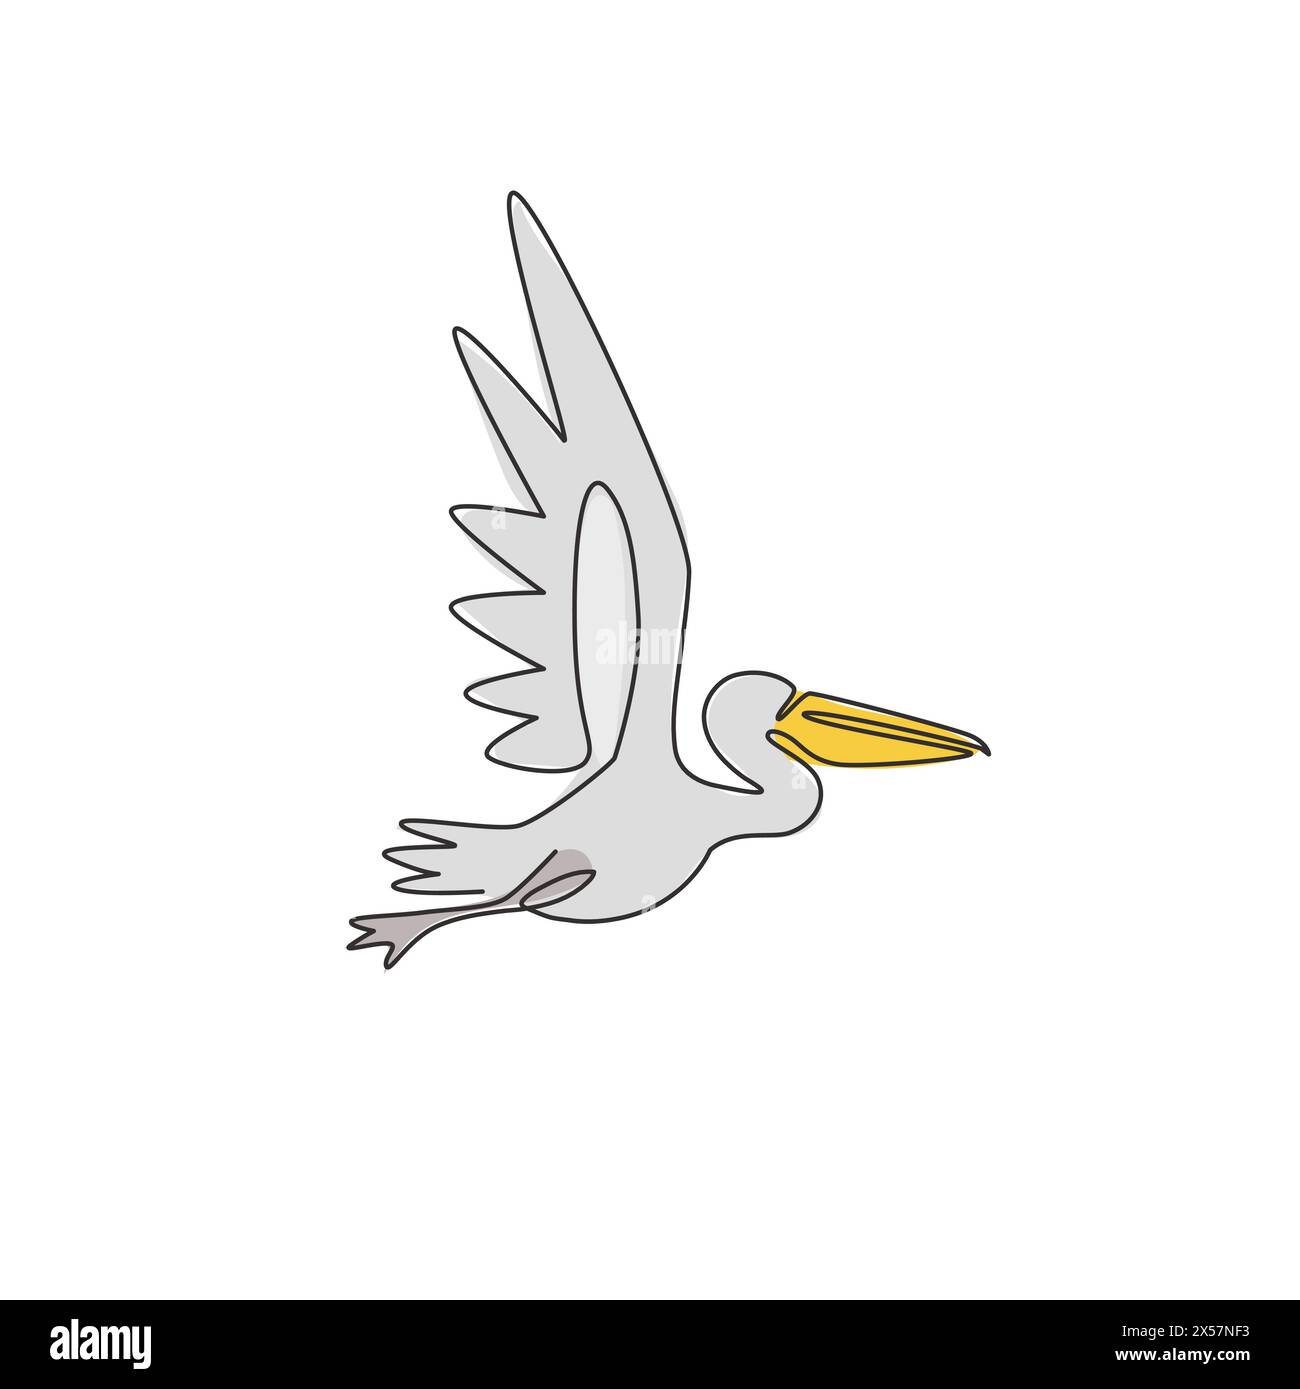 Eine durchgehende Linienzeichnung aus niedlichem Pelikan für die Logo-Identität des Lieferdienstunternehmens. Großes Vogelmaskottkonzept für den Produktversand enterpr Stock Vektor